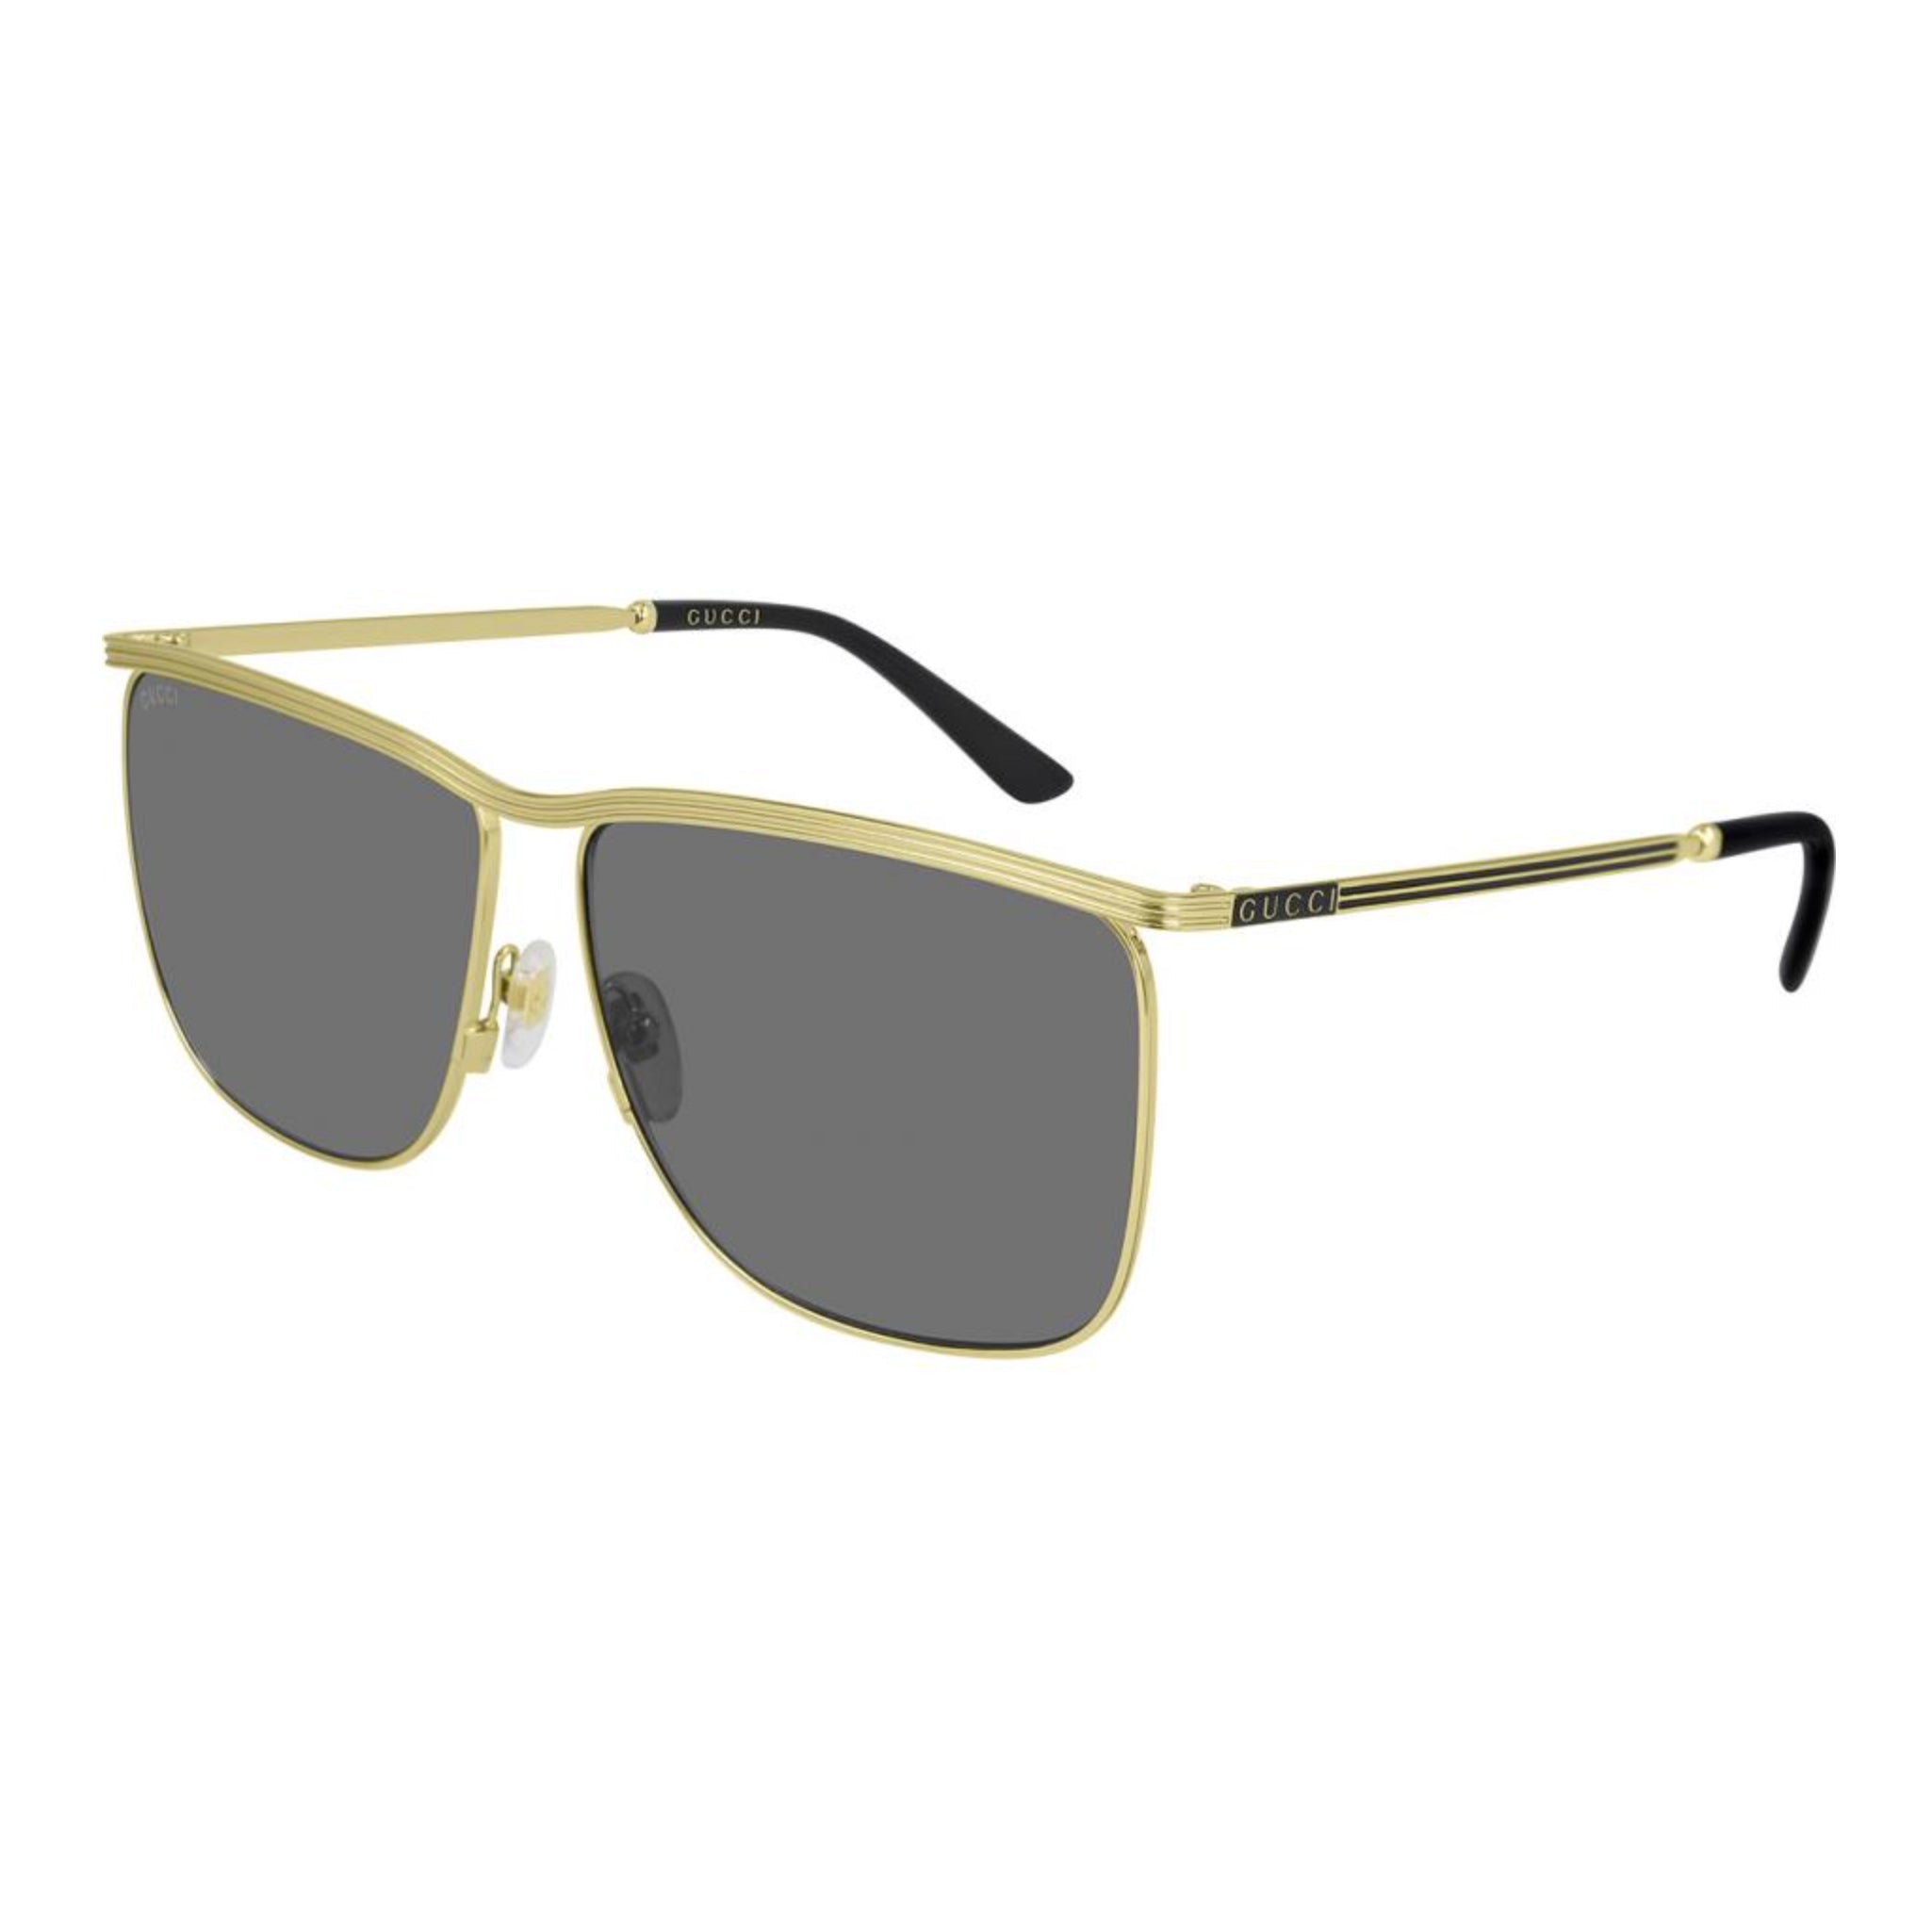 Buy Gucci Sunglasses 1135S 001 51 | GEM OPTICIANS – GEM Opticians